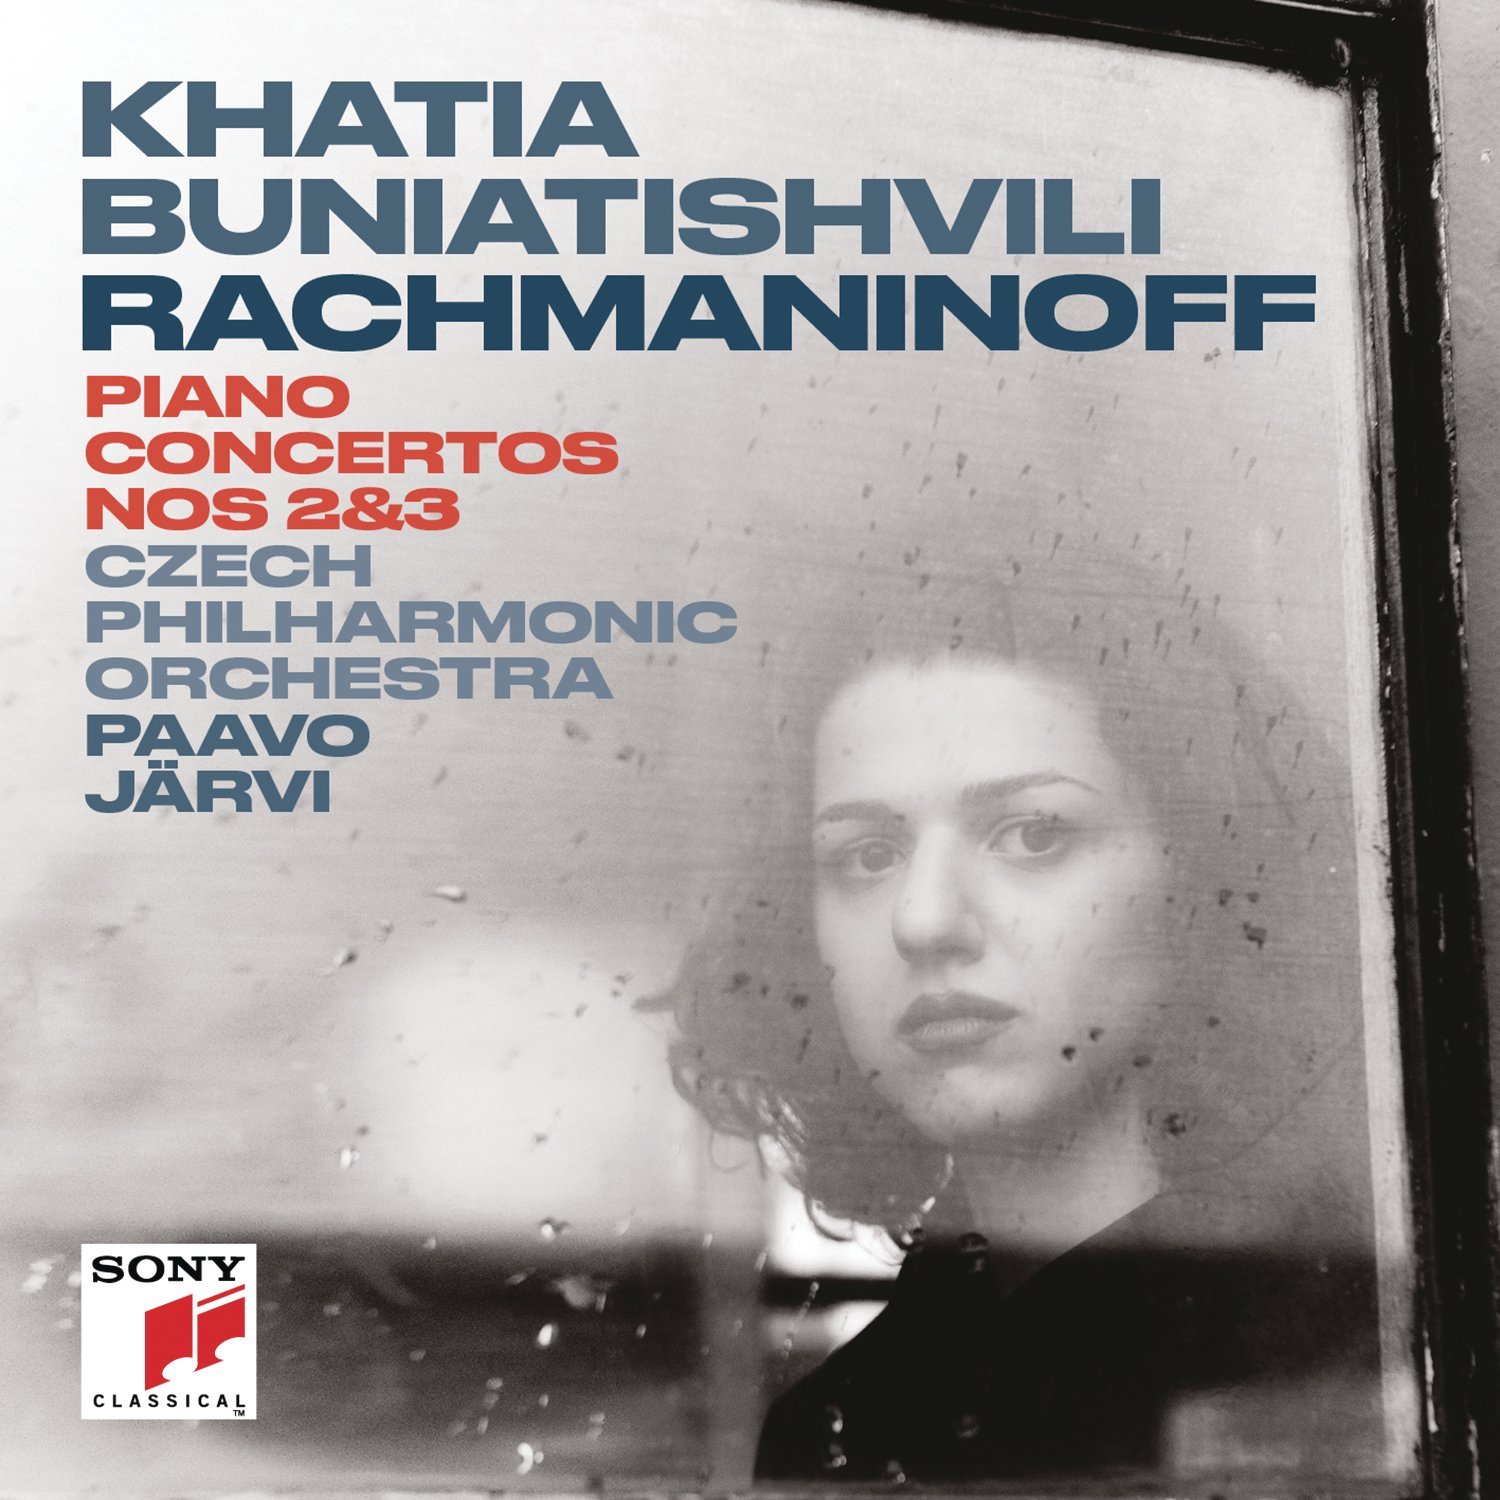 Khatia Buniatishvili – Rachmaninoff: Piano Concerto No. 2 & No. 3 (2017) [Qobuz FLAC 24bit/96kHz]